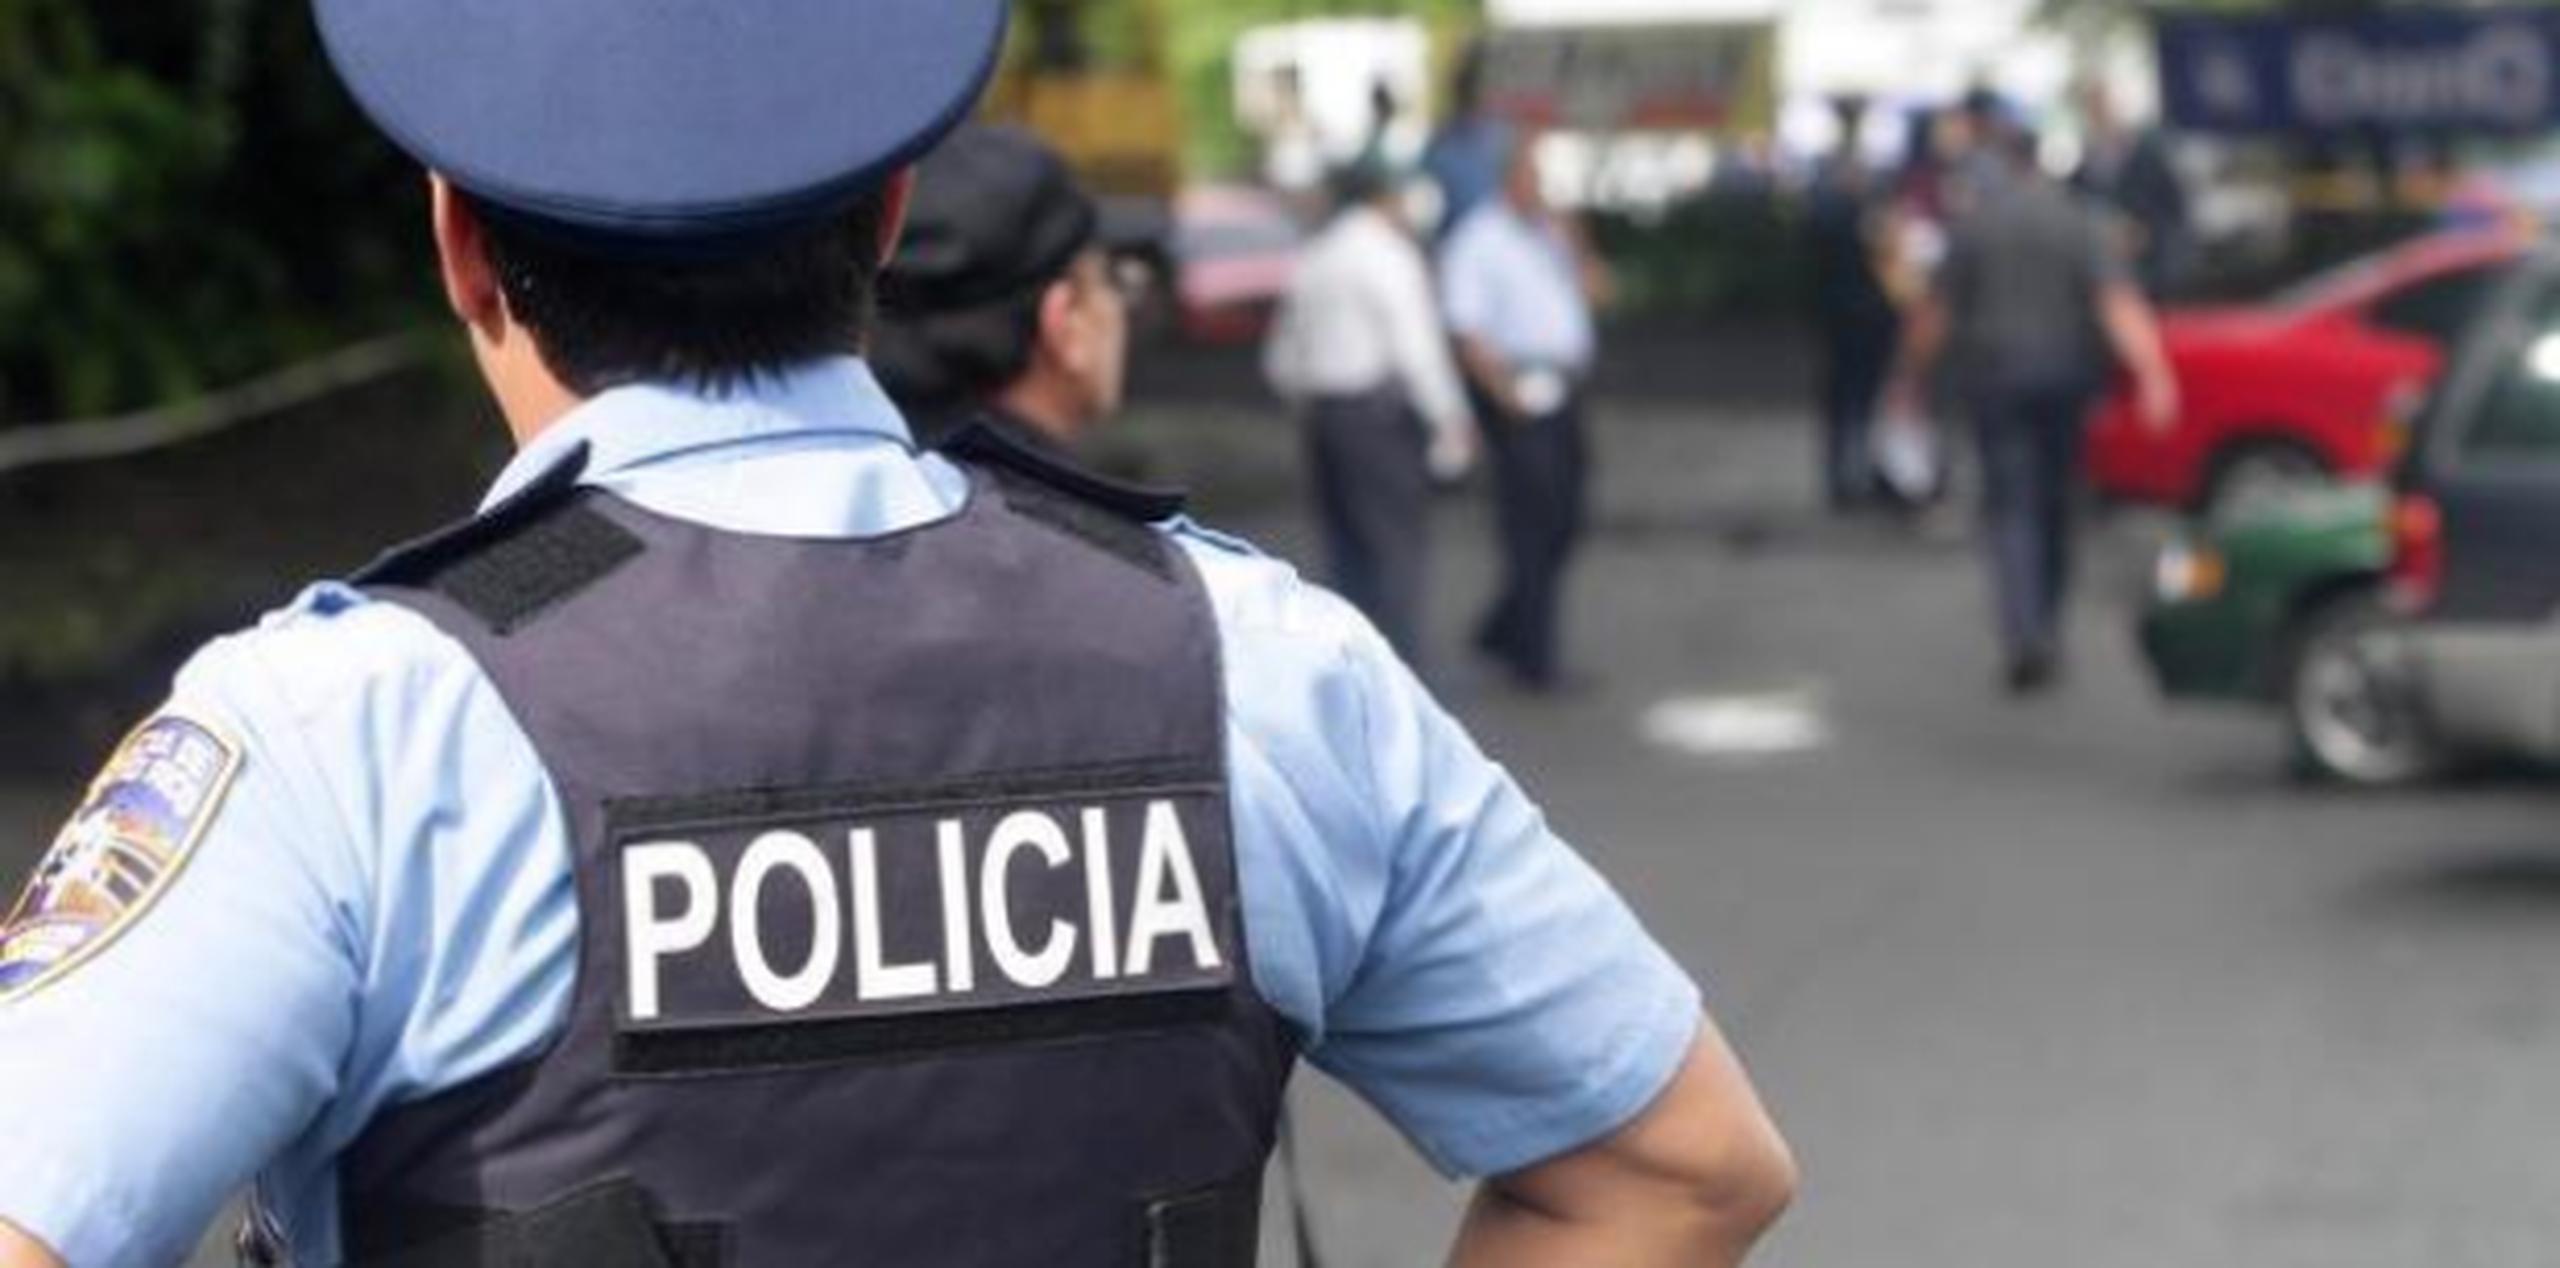 La Policía diligenció órdenes de allanamiento en la comunidad Monte Bello, de Río Grande. (Archivo)